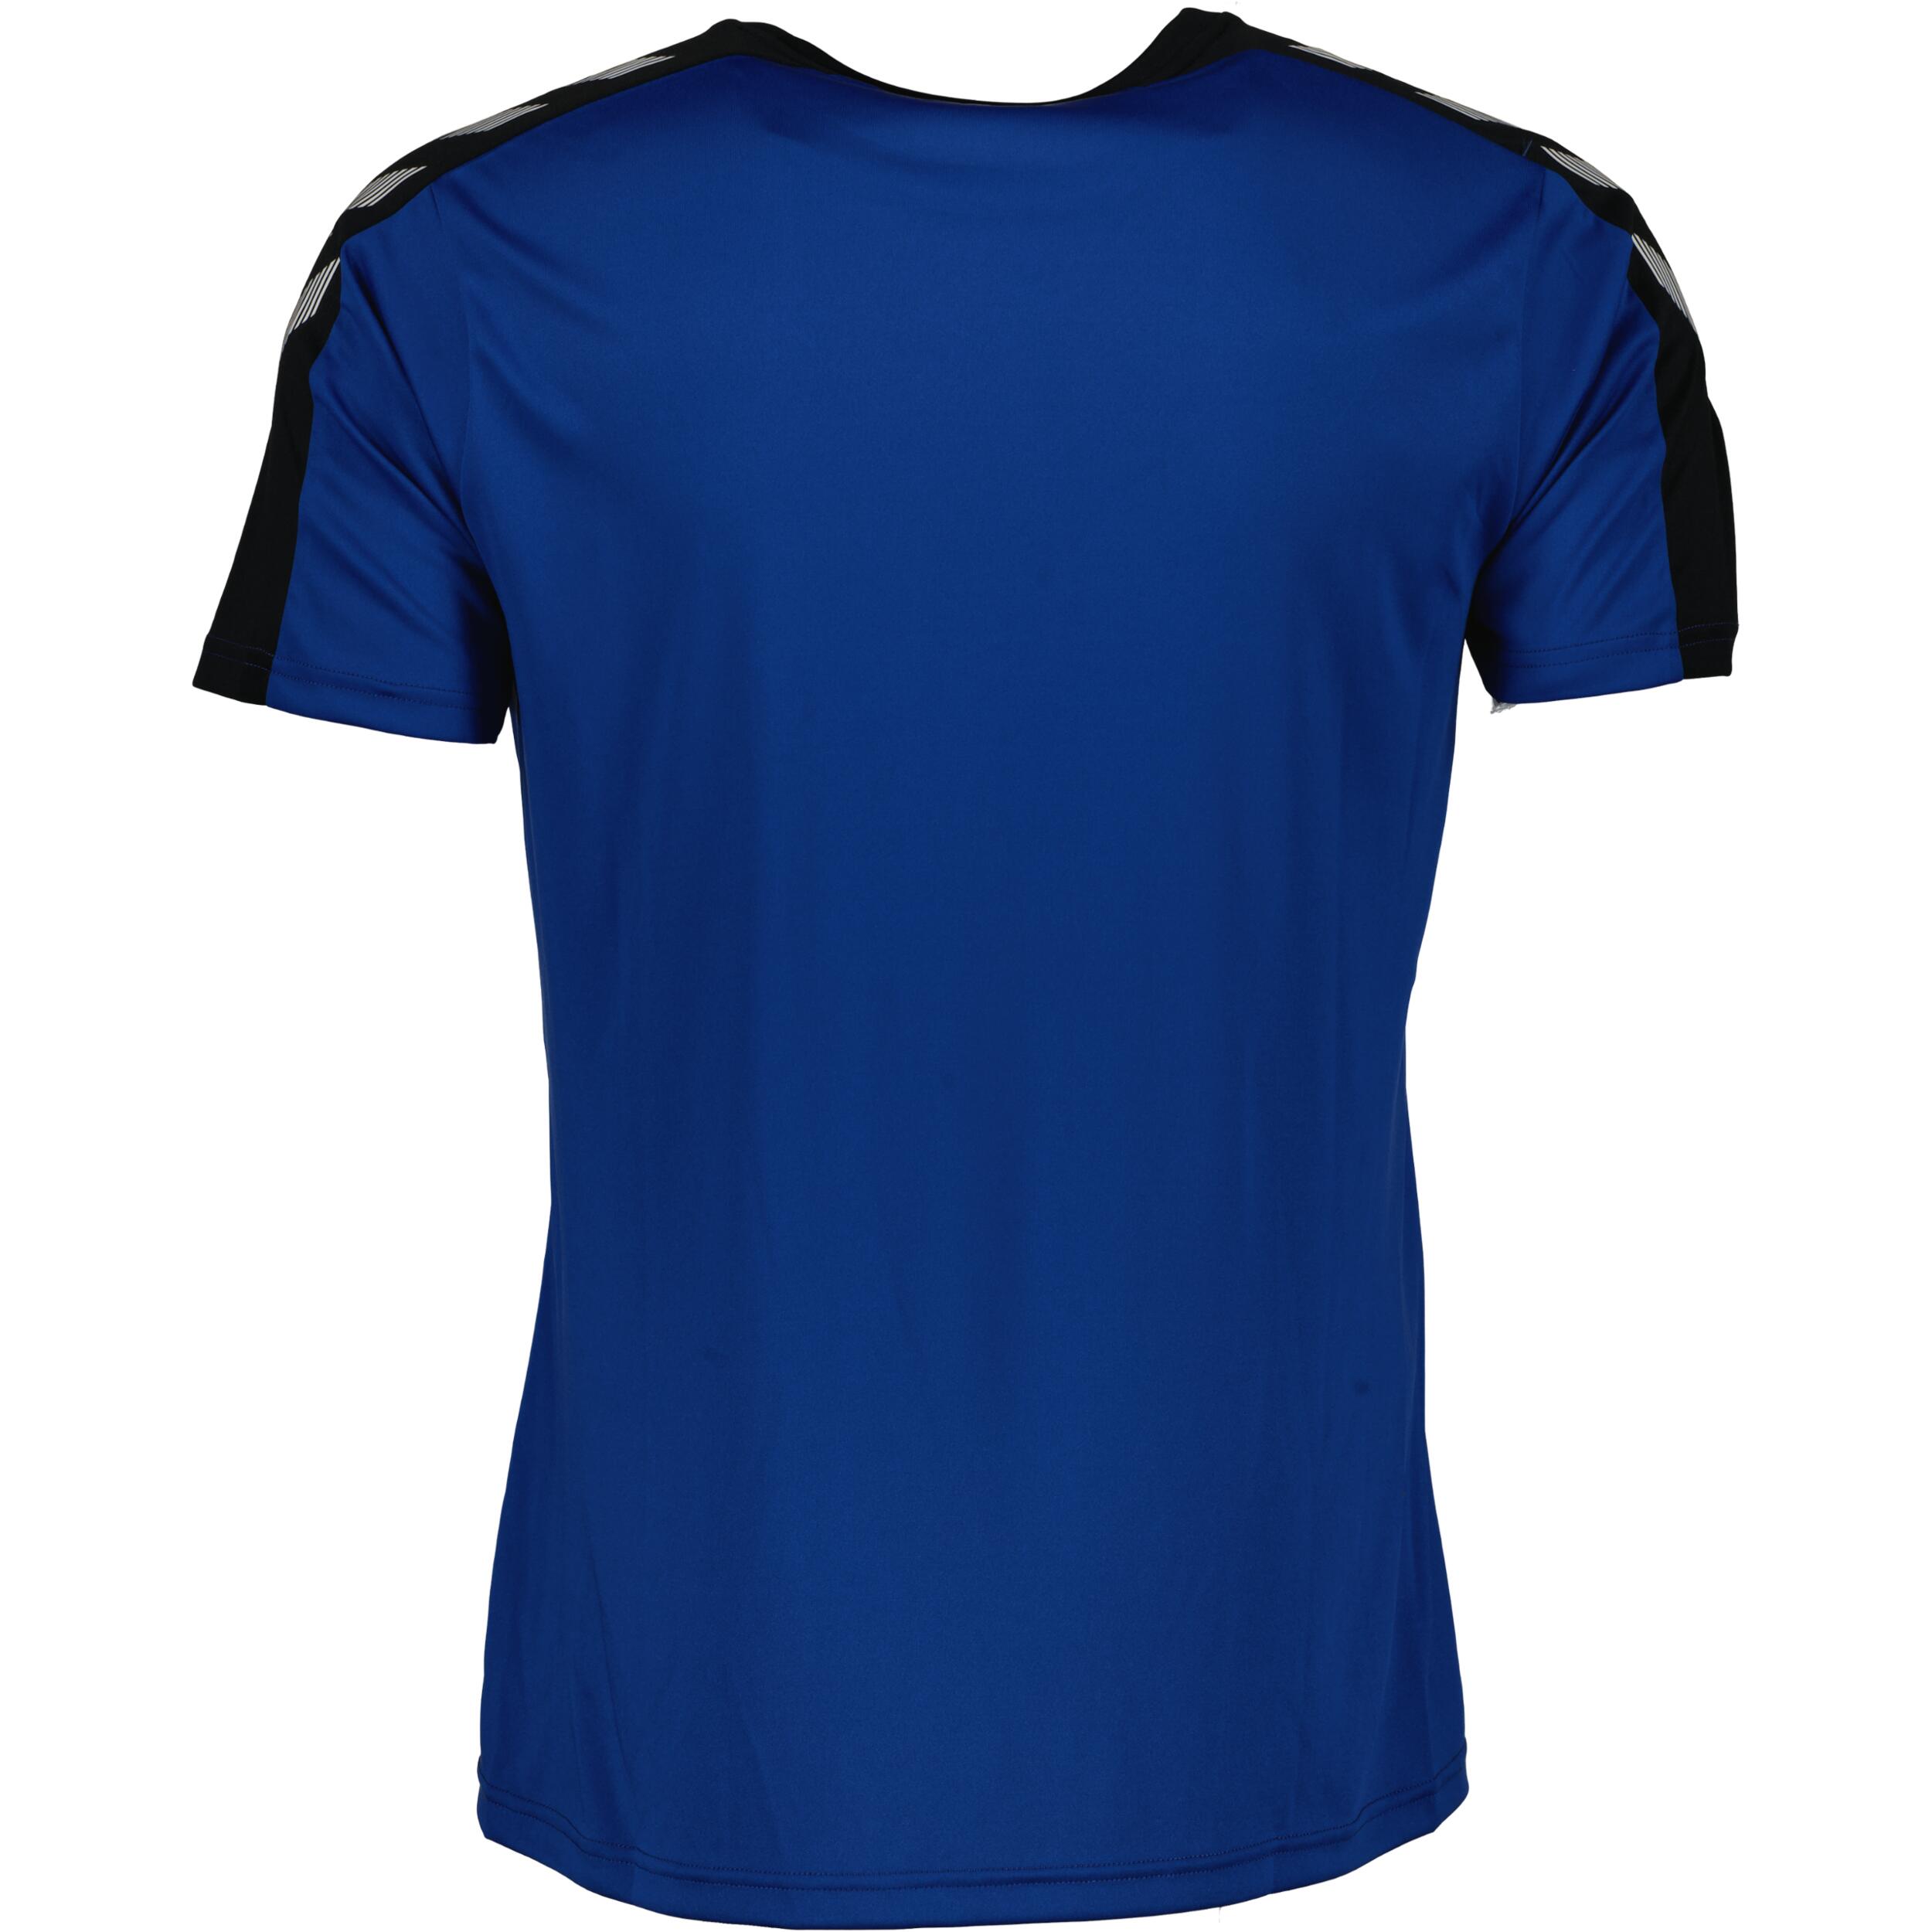 Stripe jersey for men, great for football,  in black/true blue 2/3